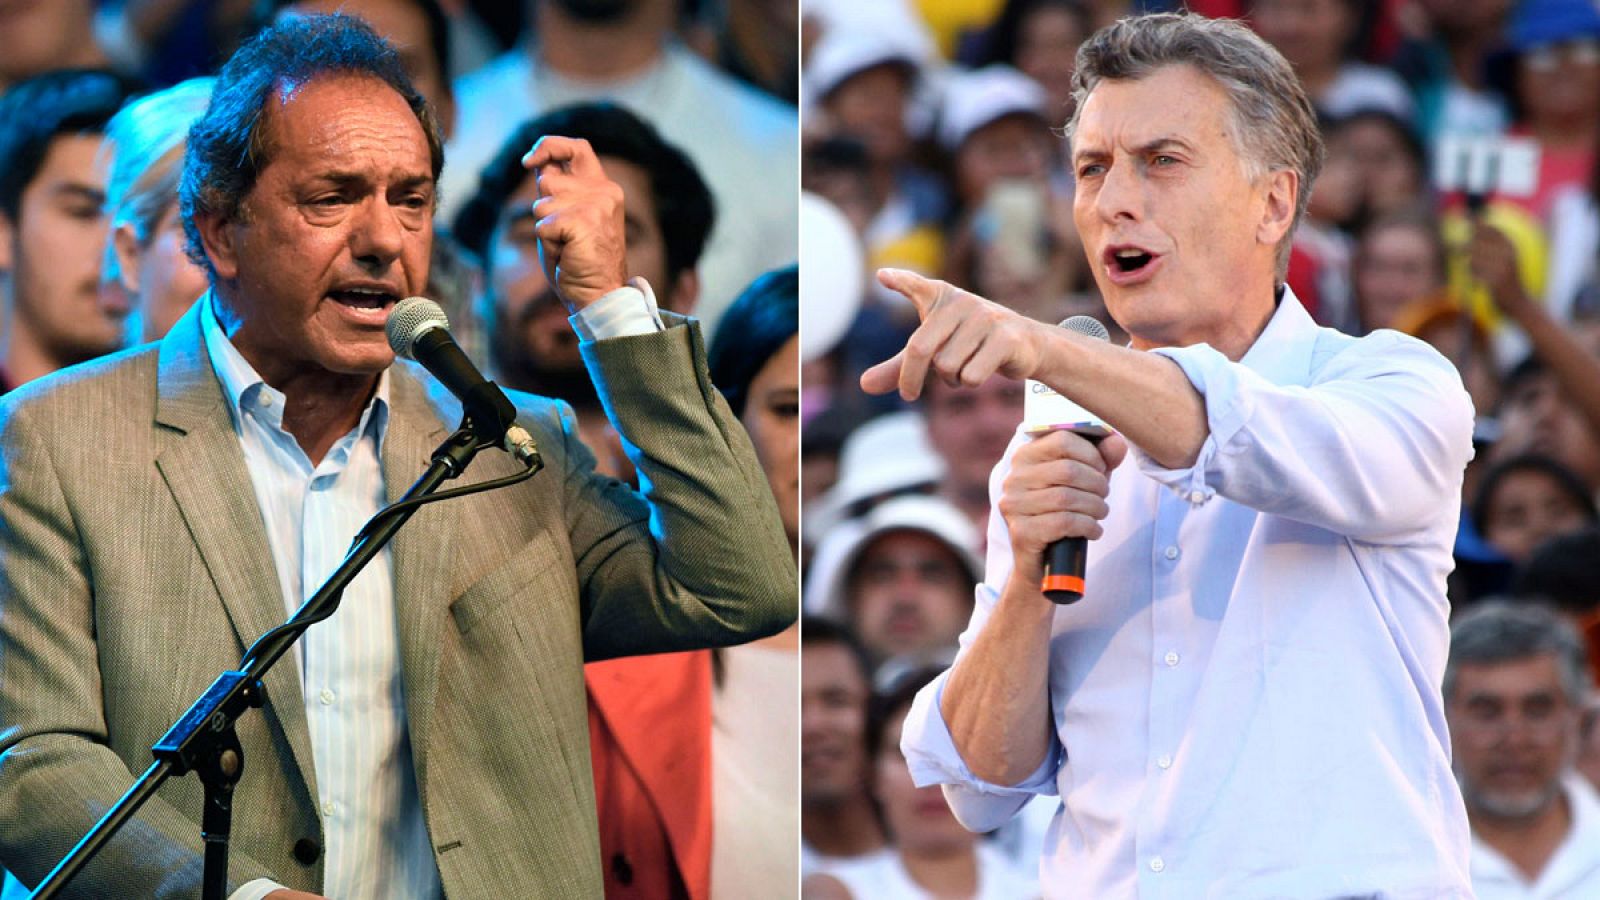 Los candidatos a la presidencia de Argentina, Mauricio Macri y Daniel Scioli, durante los actos de cierre de sus respectivas campañas.